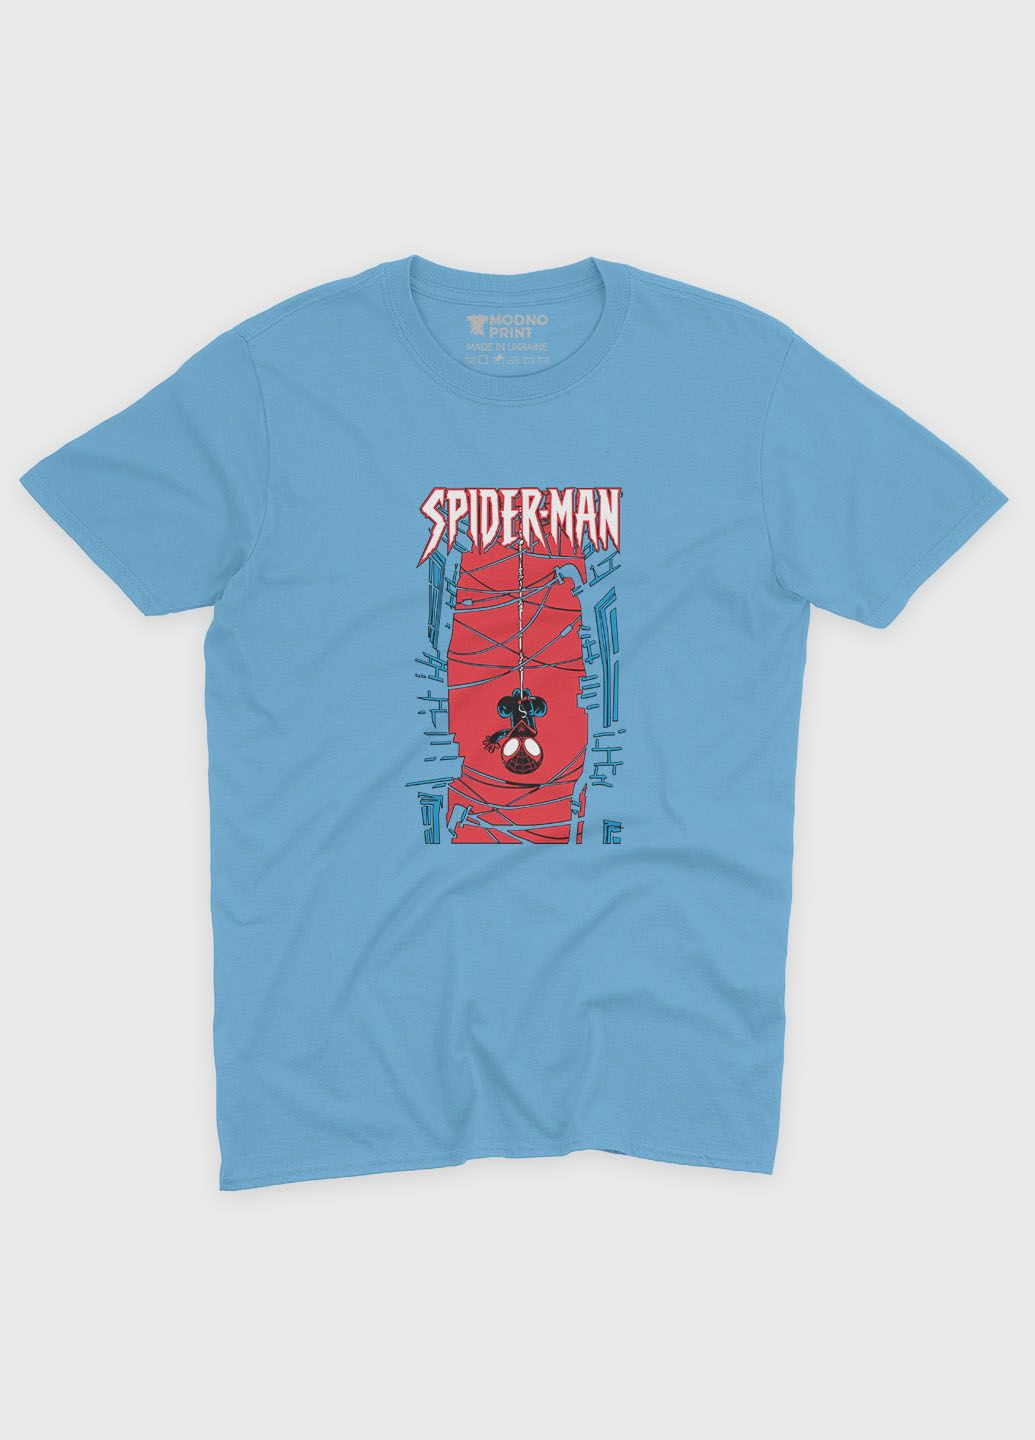 Голубая демисезонная футболка для мальчика с принтом супергероя - человек-паук (ts001-1-lbl-006-014-033-b) Modno